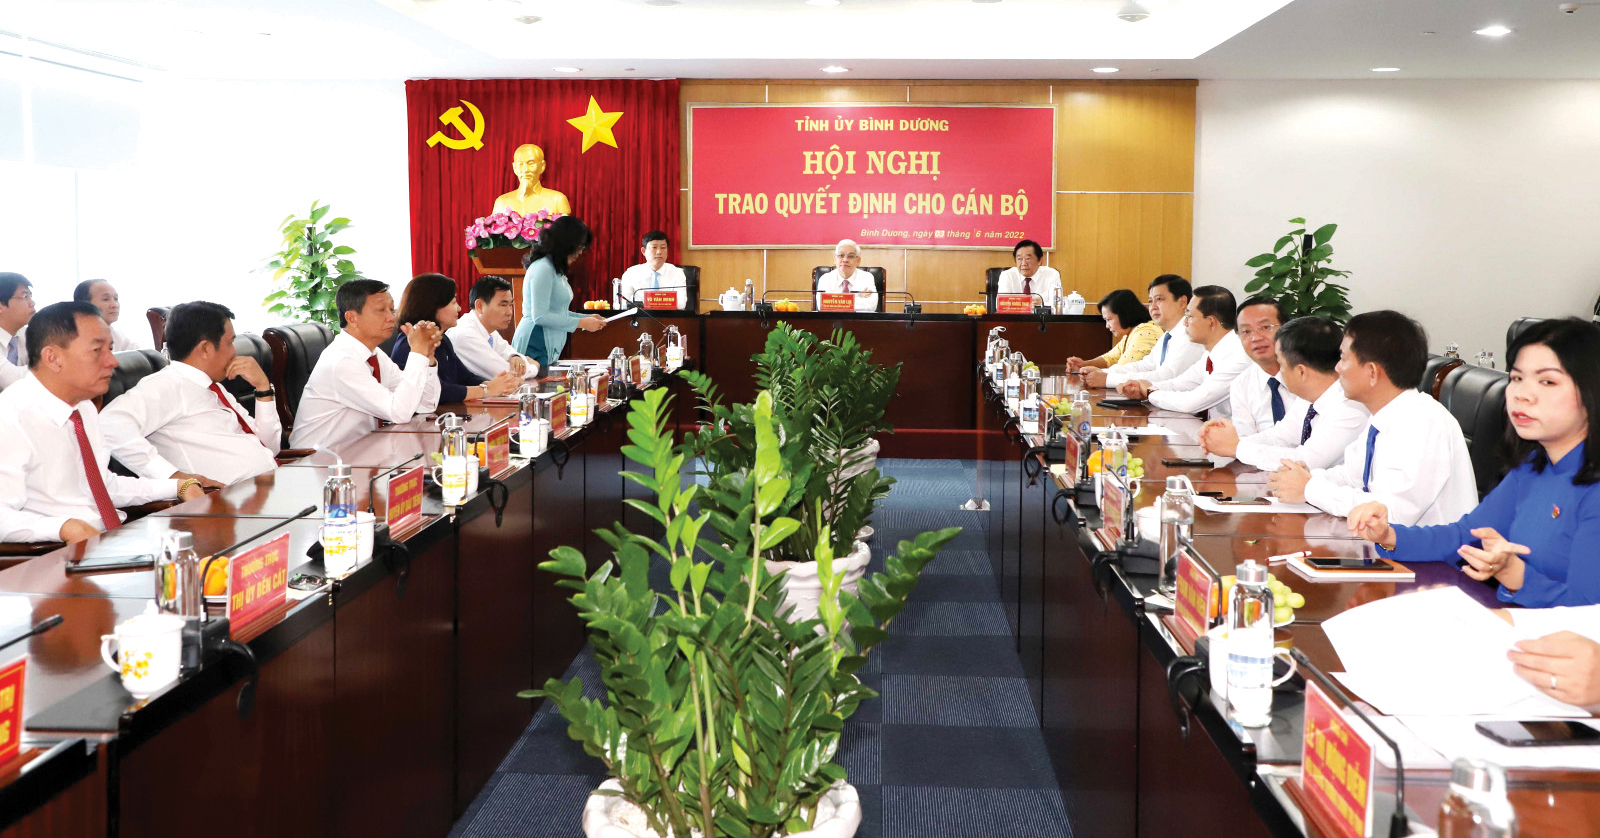 Đồng chí Nguyễn Văn Lợi - Ủy viên Trung ương Đảng, Bí thư Tỉnh ủy (ngồi giữa) tại Hội nghị trao quyết định cho cán bộ ngày 3-6-2022.